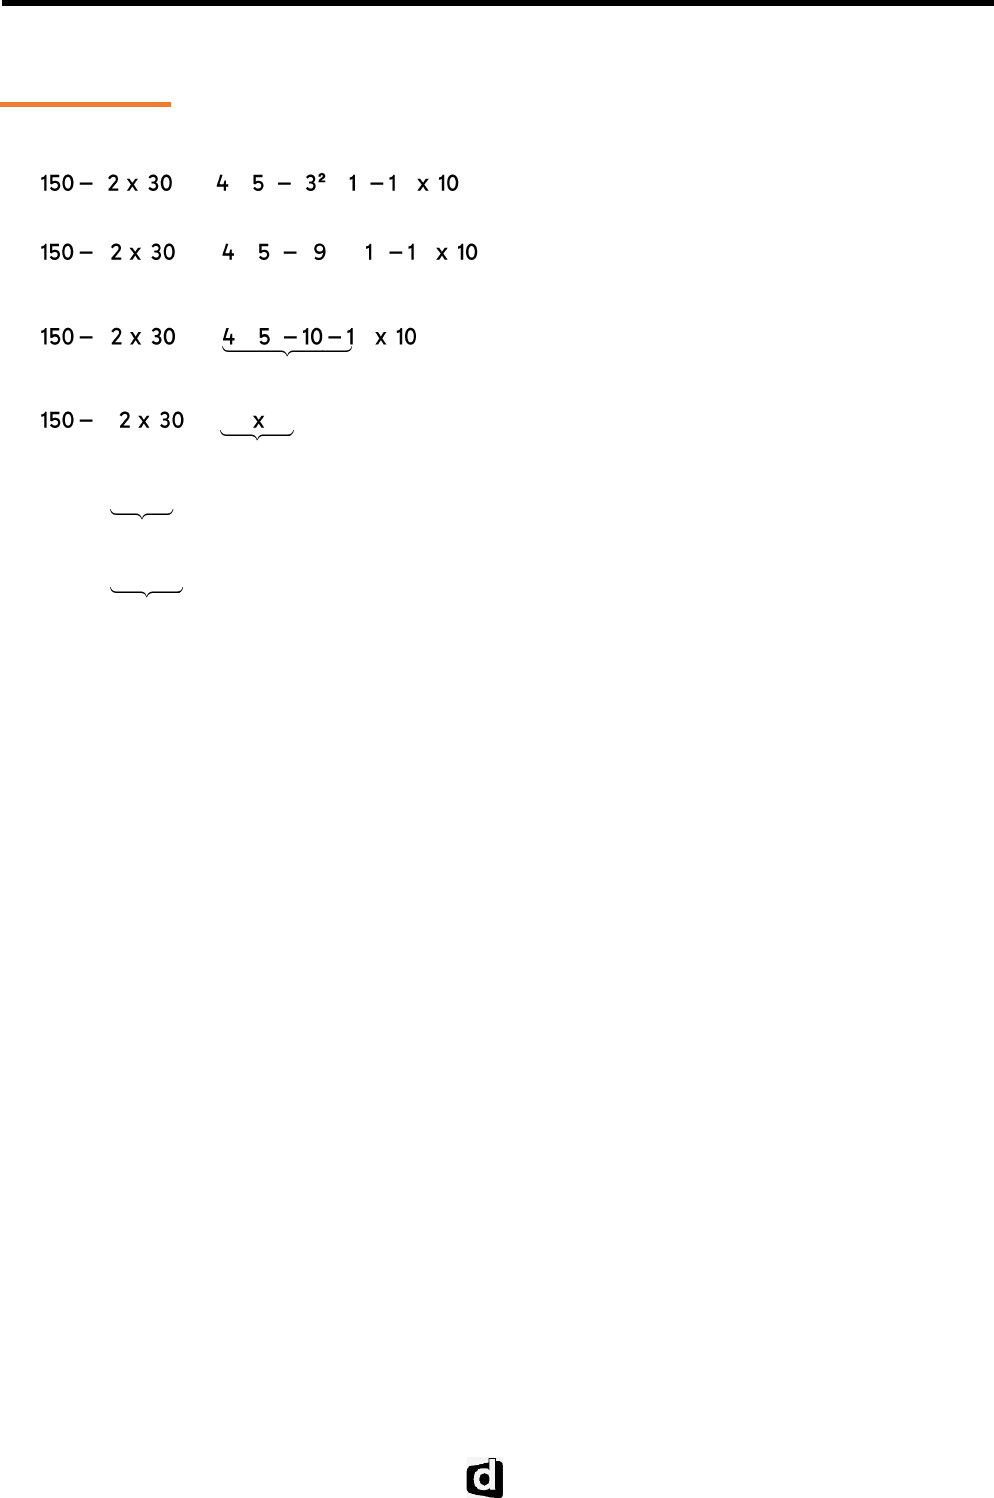 Centro Estudantil Sousa Correia - Observe a expressão numérica: 15+34-93:3.( 4+7) O que deve ser feito primeiro? a) Adição (+) b) Subtração (-) c)  Divisão (:) d) Parênteses f) Multiplicação (x) Você sabe